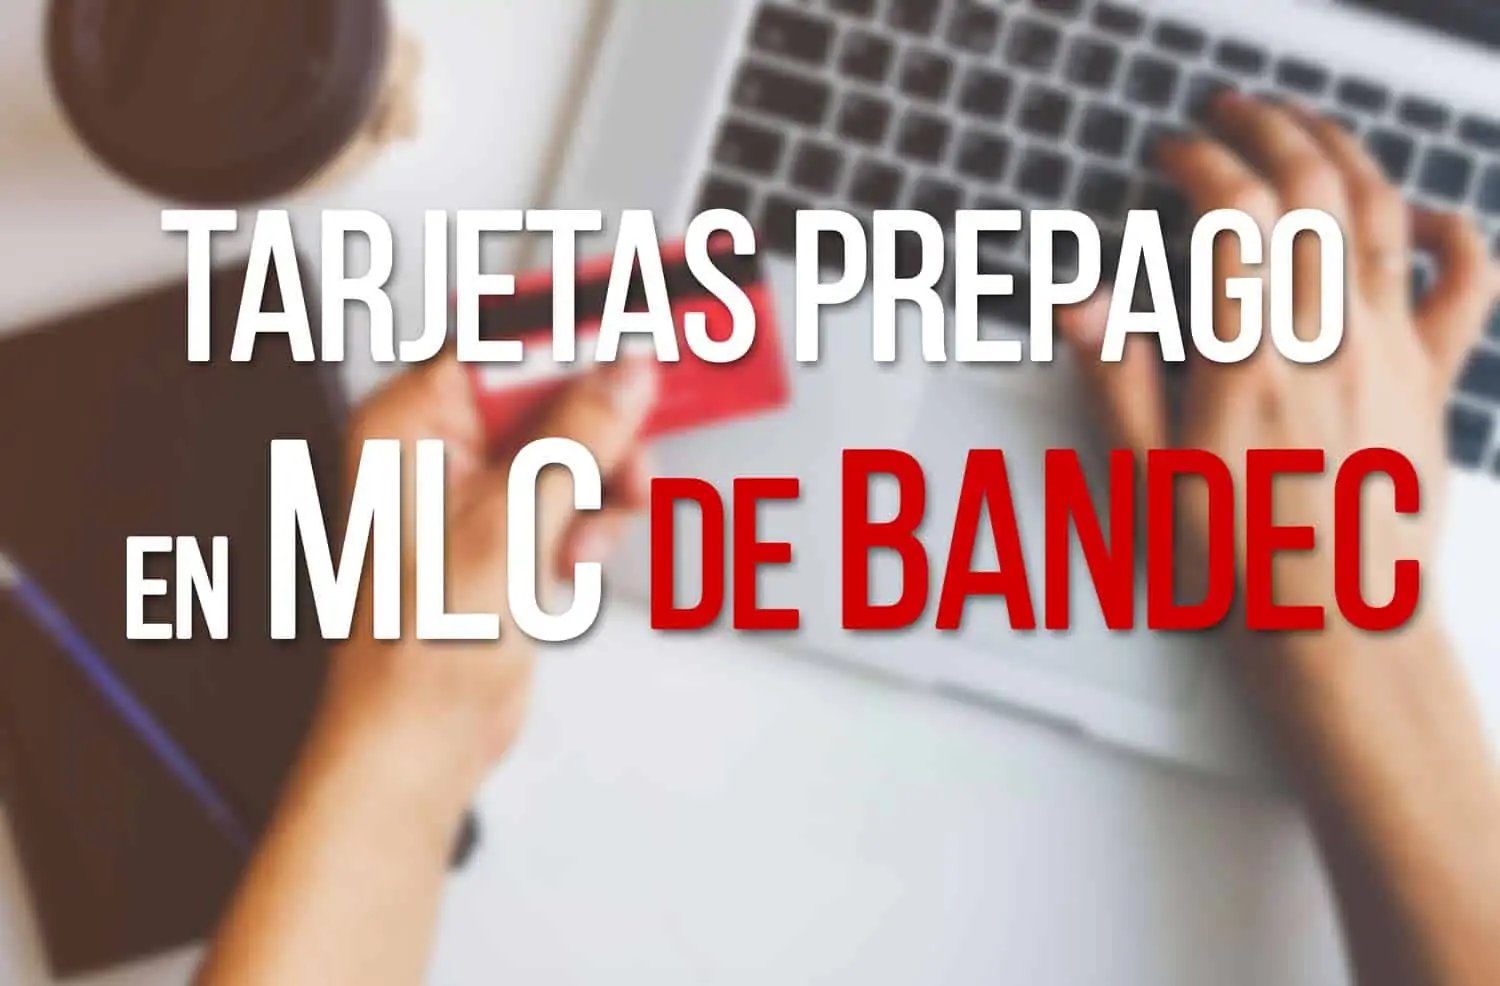 Tarjetas Prepago de BANDEC en MLC para Viajeros Internacionales